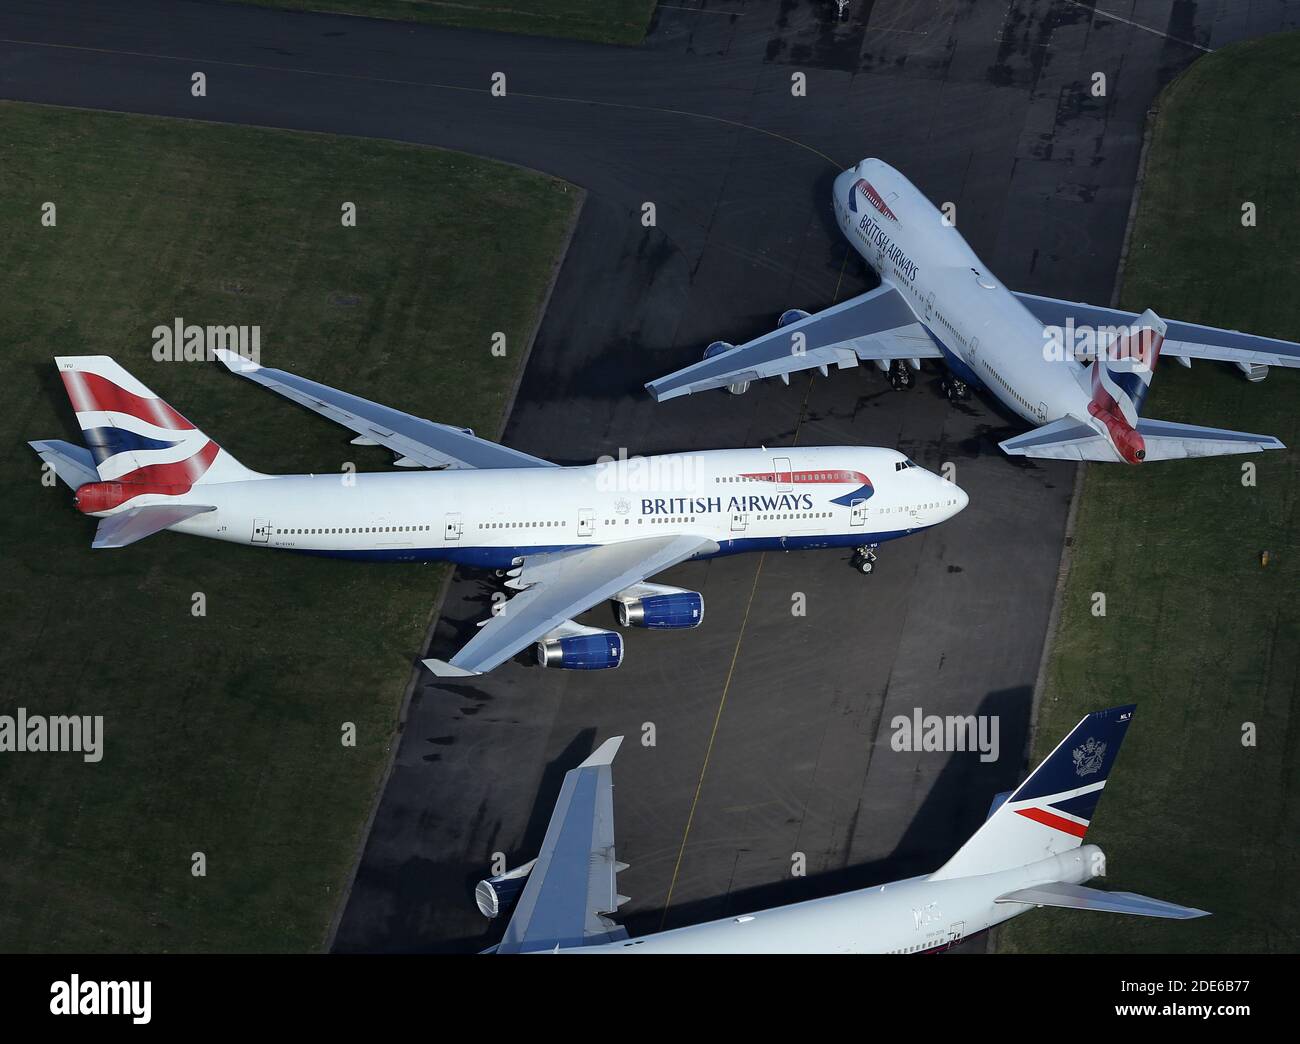 Vista aerea della British Airways Boeing 747 Jumbo Jets all'aeroporto di Cardiff, Galles. Foto Stock